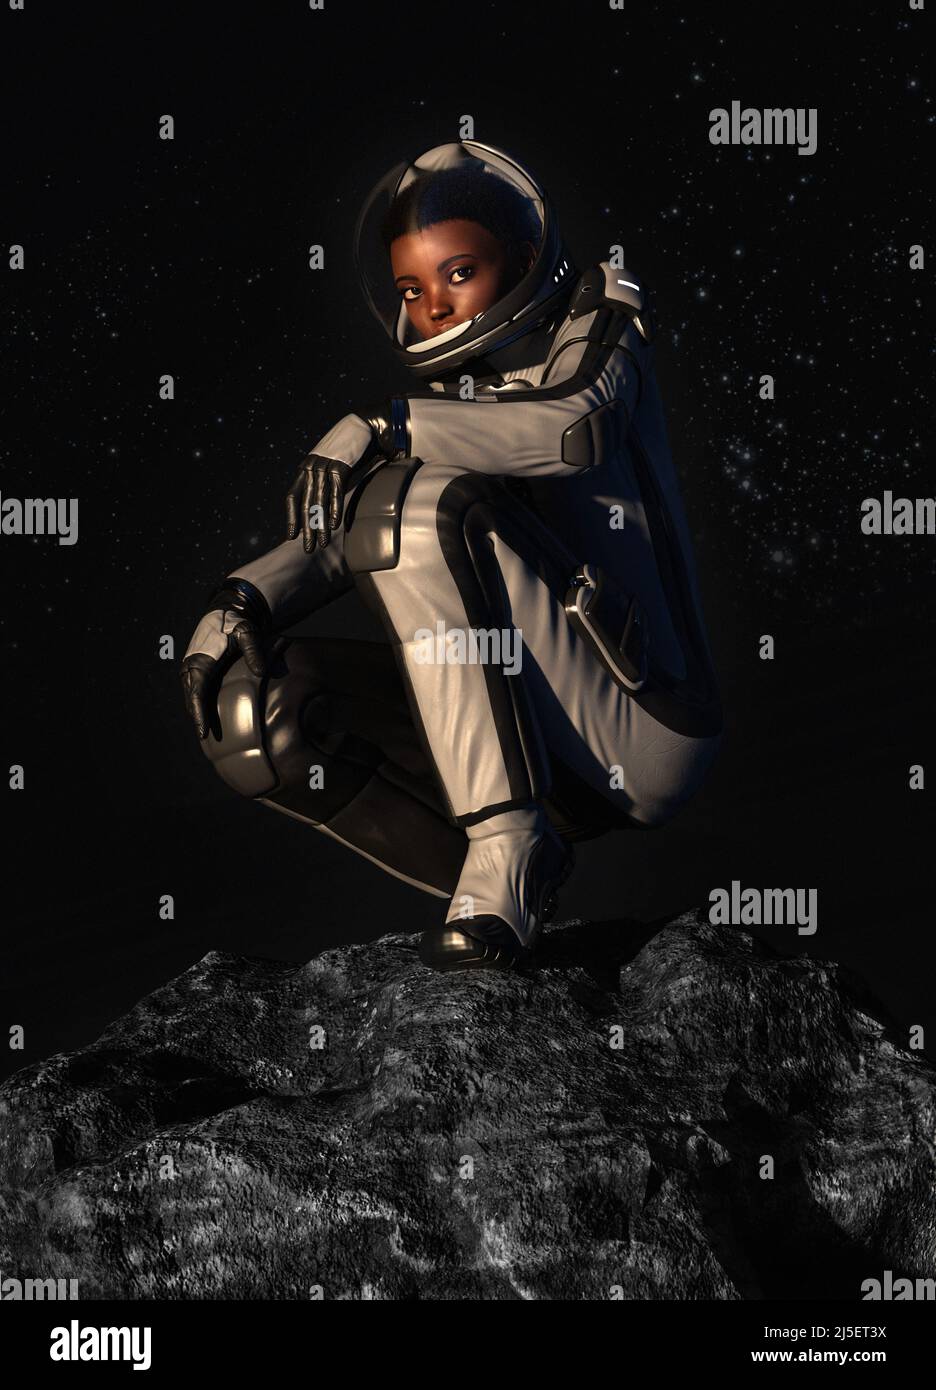 Astronauta sentado en una roca, ilustración Foto de stock